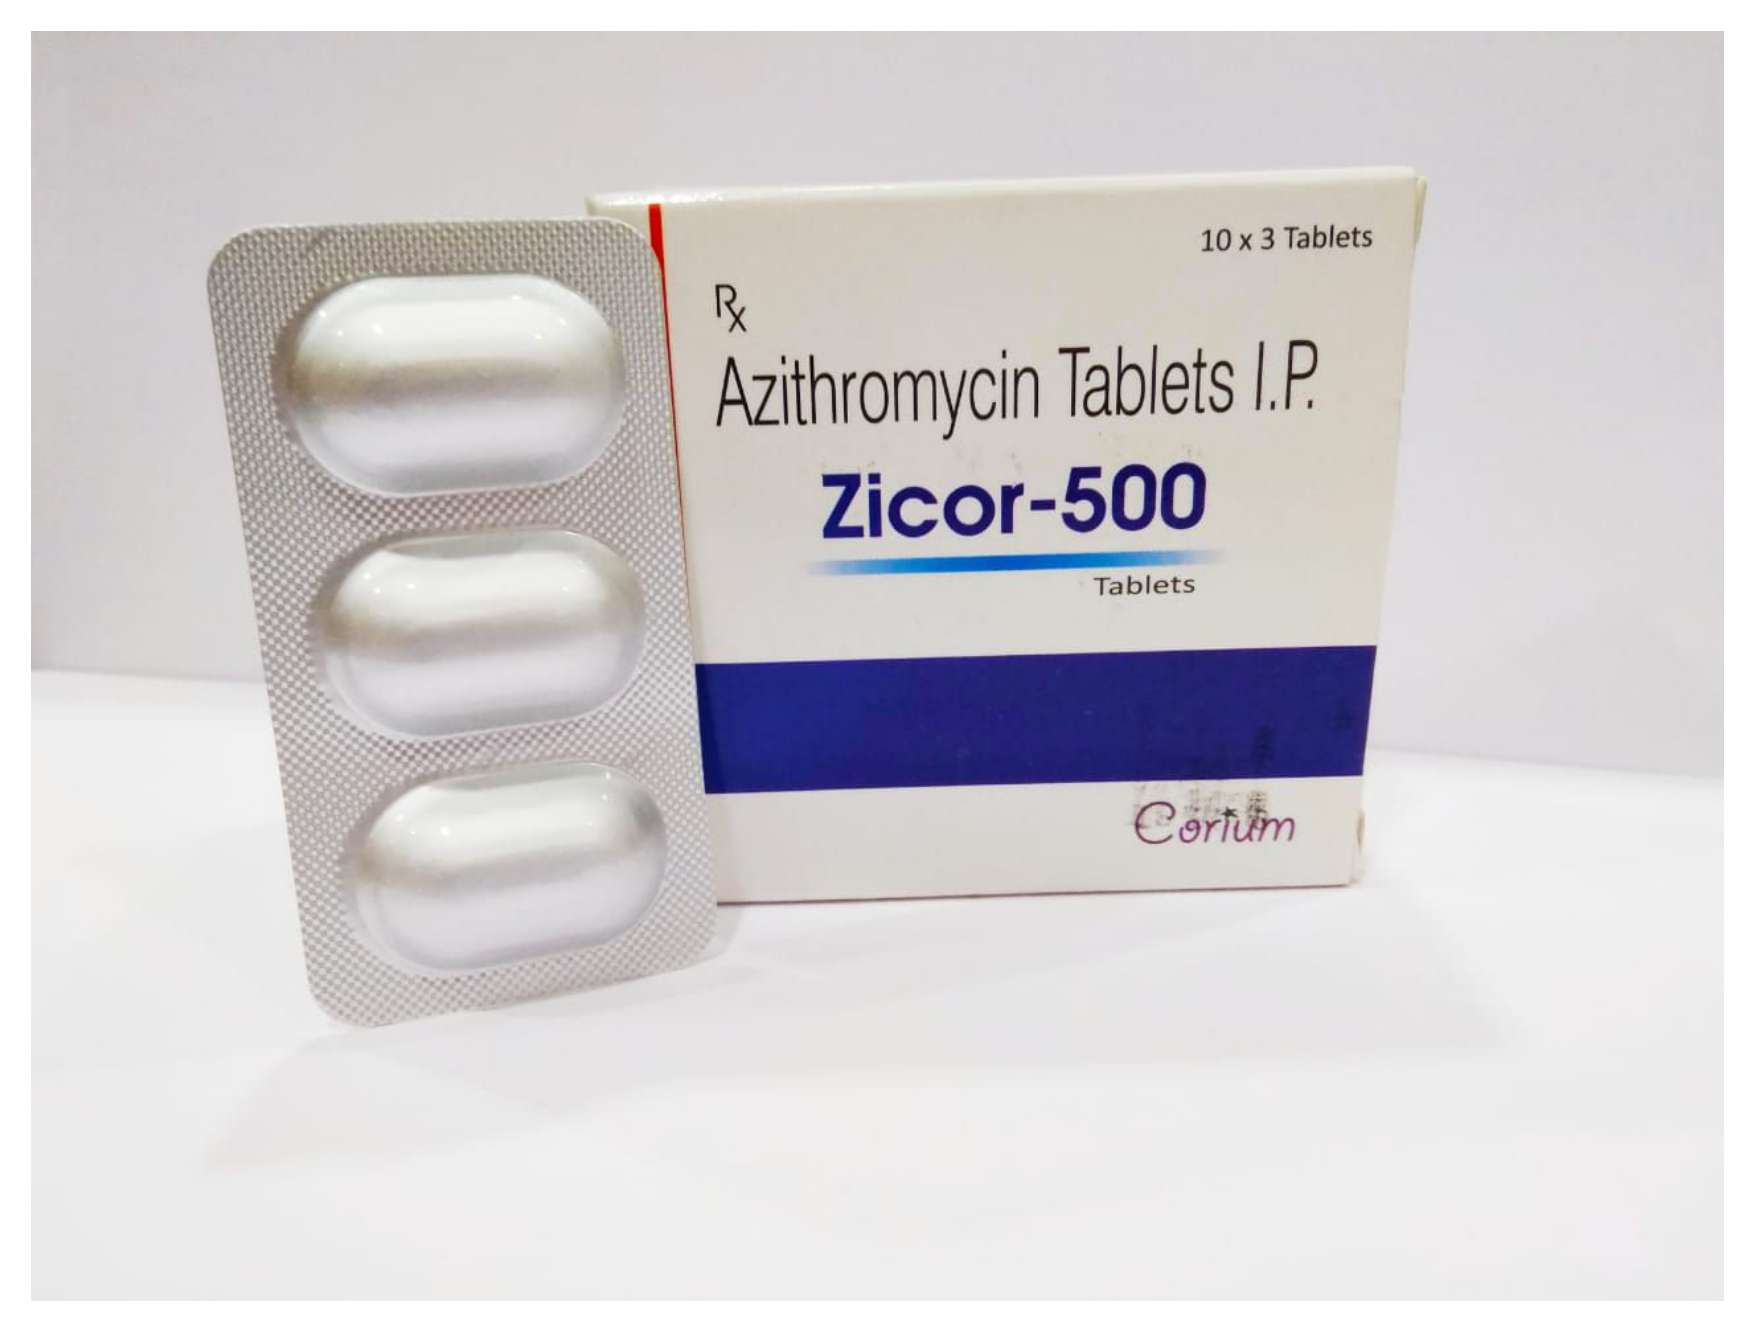 azithromycin-500mg tablets.